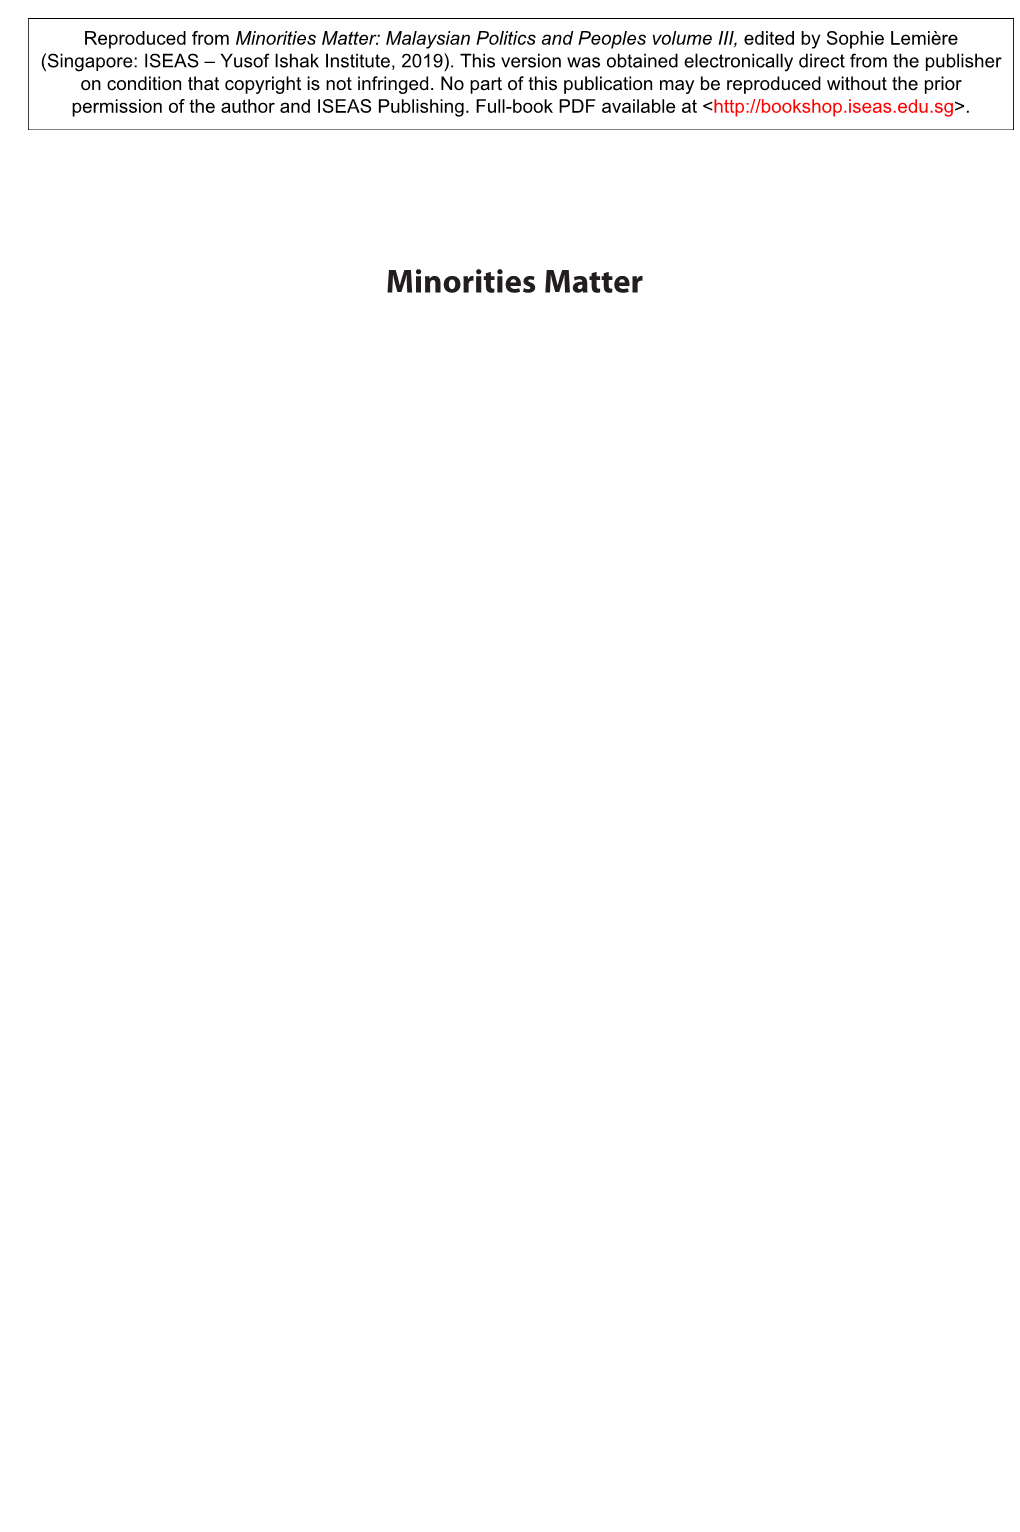 Minorities Matter